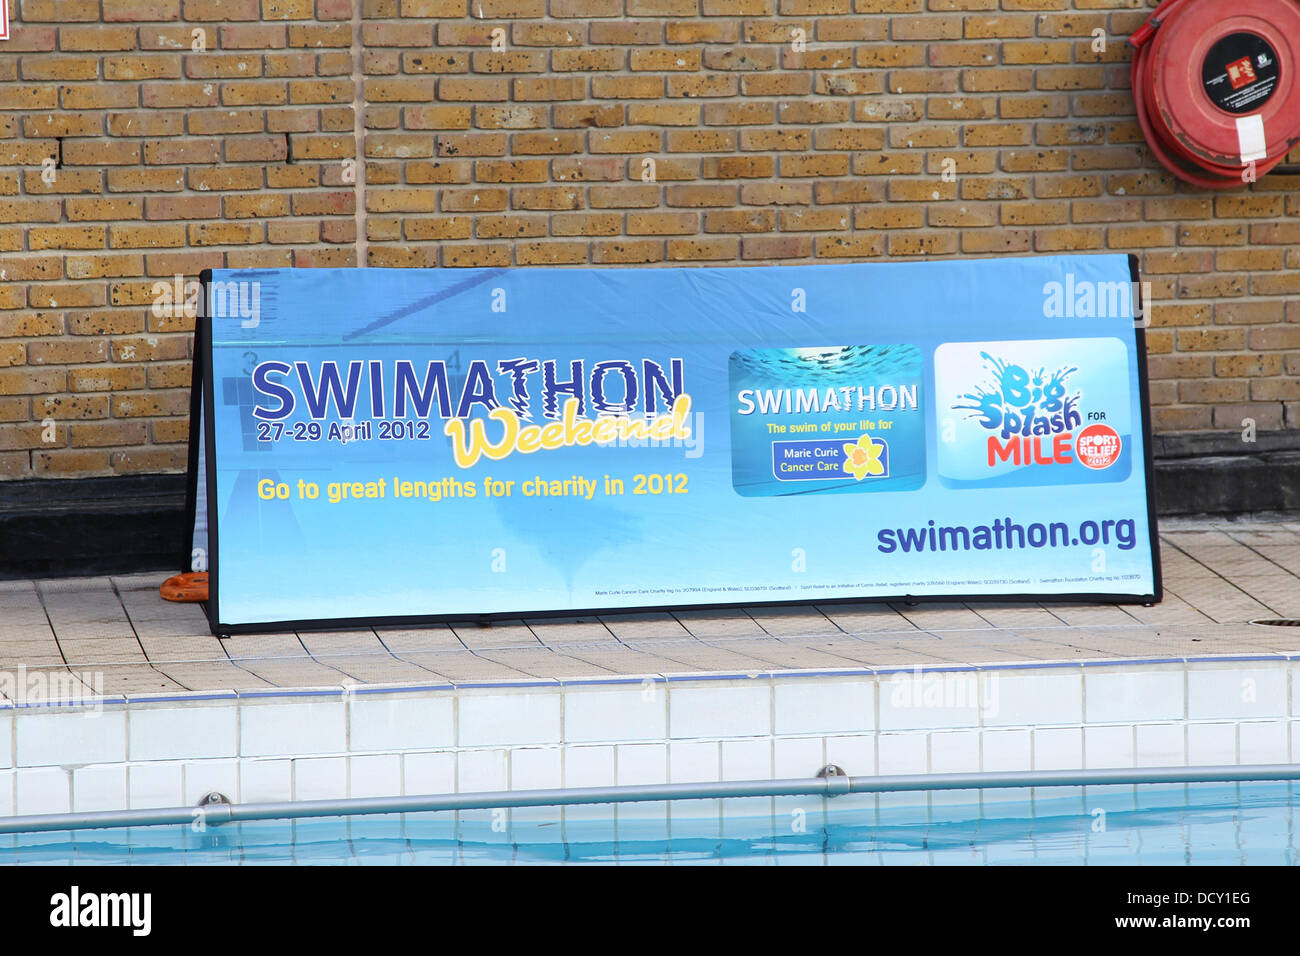 Atmósfera Jodie Kidd y Duncan Goodhew MBE lanzar oficialmente Swimathon 2012, un baño anual de caridad que tiene lugar durante el mes de abril en el centro deportivo de oasis en el Covent Garden de Londres, Inglaterra - 05.01.12 Obligatorios: WENN.com crédito Foto de stock